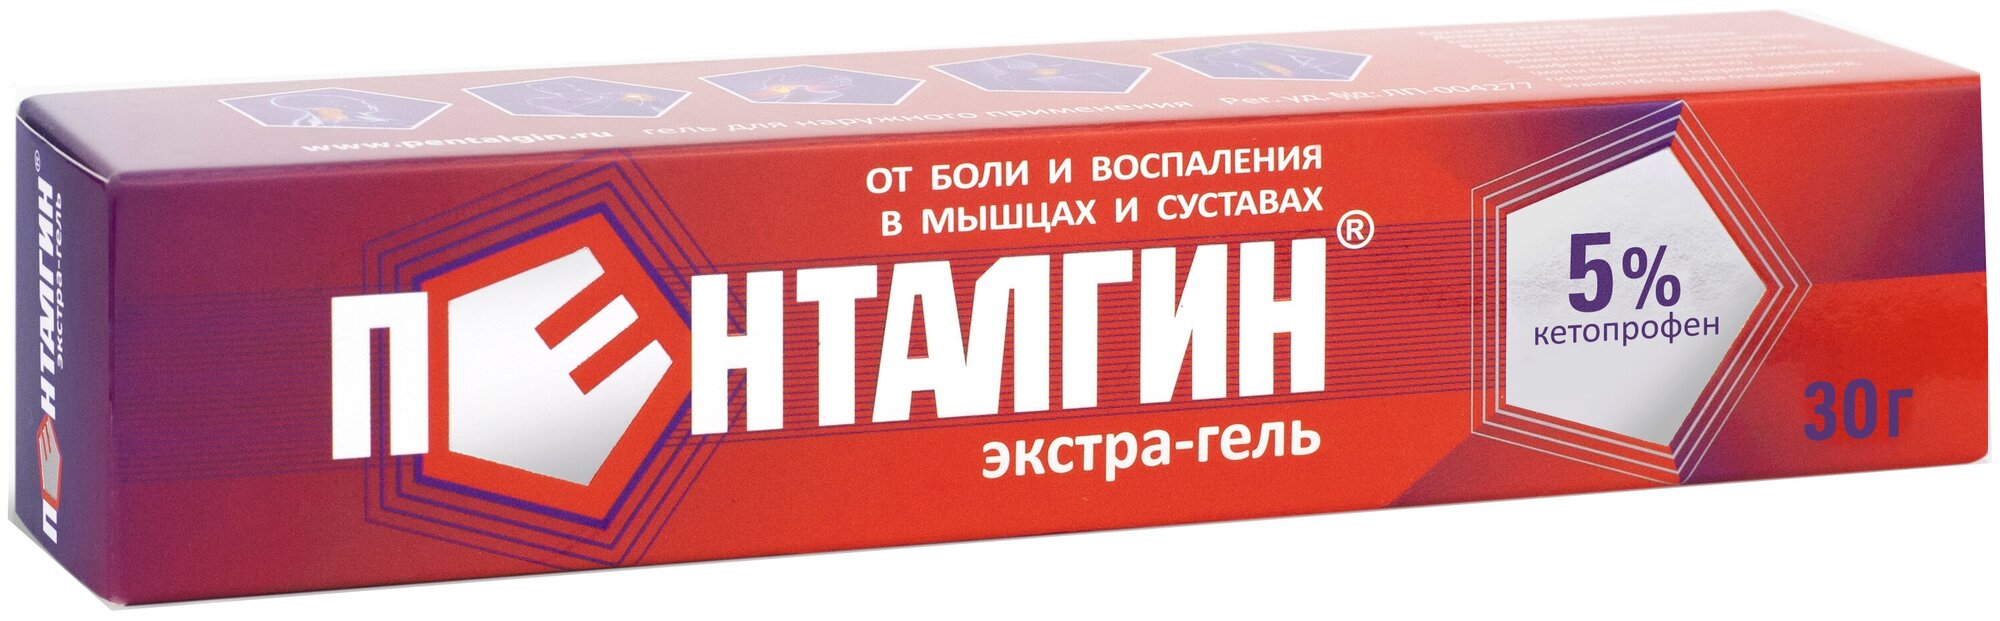 Пенталгин экстра-гель гель д/нар. прим., 5%, 30 г